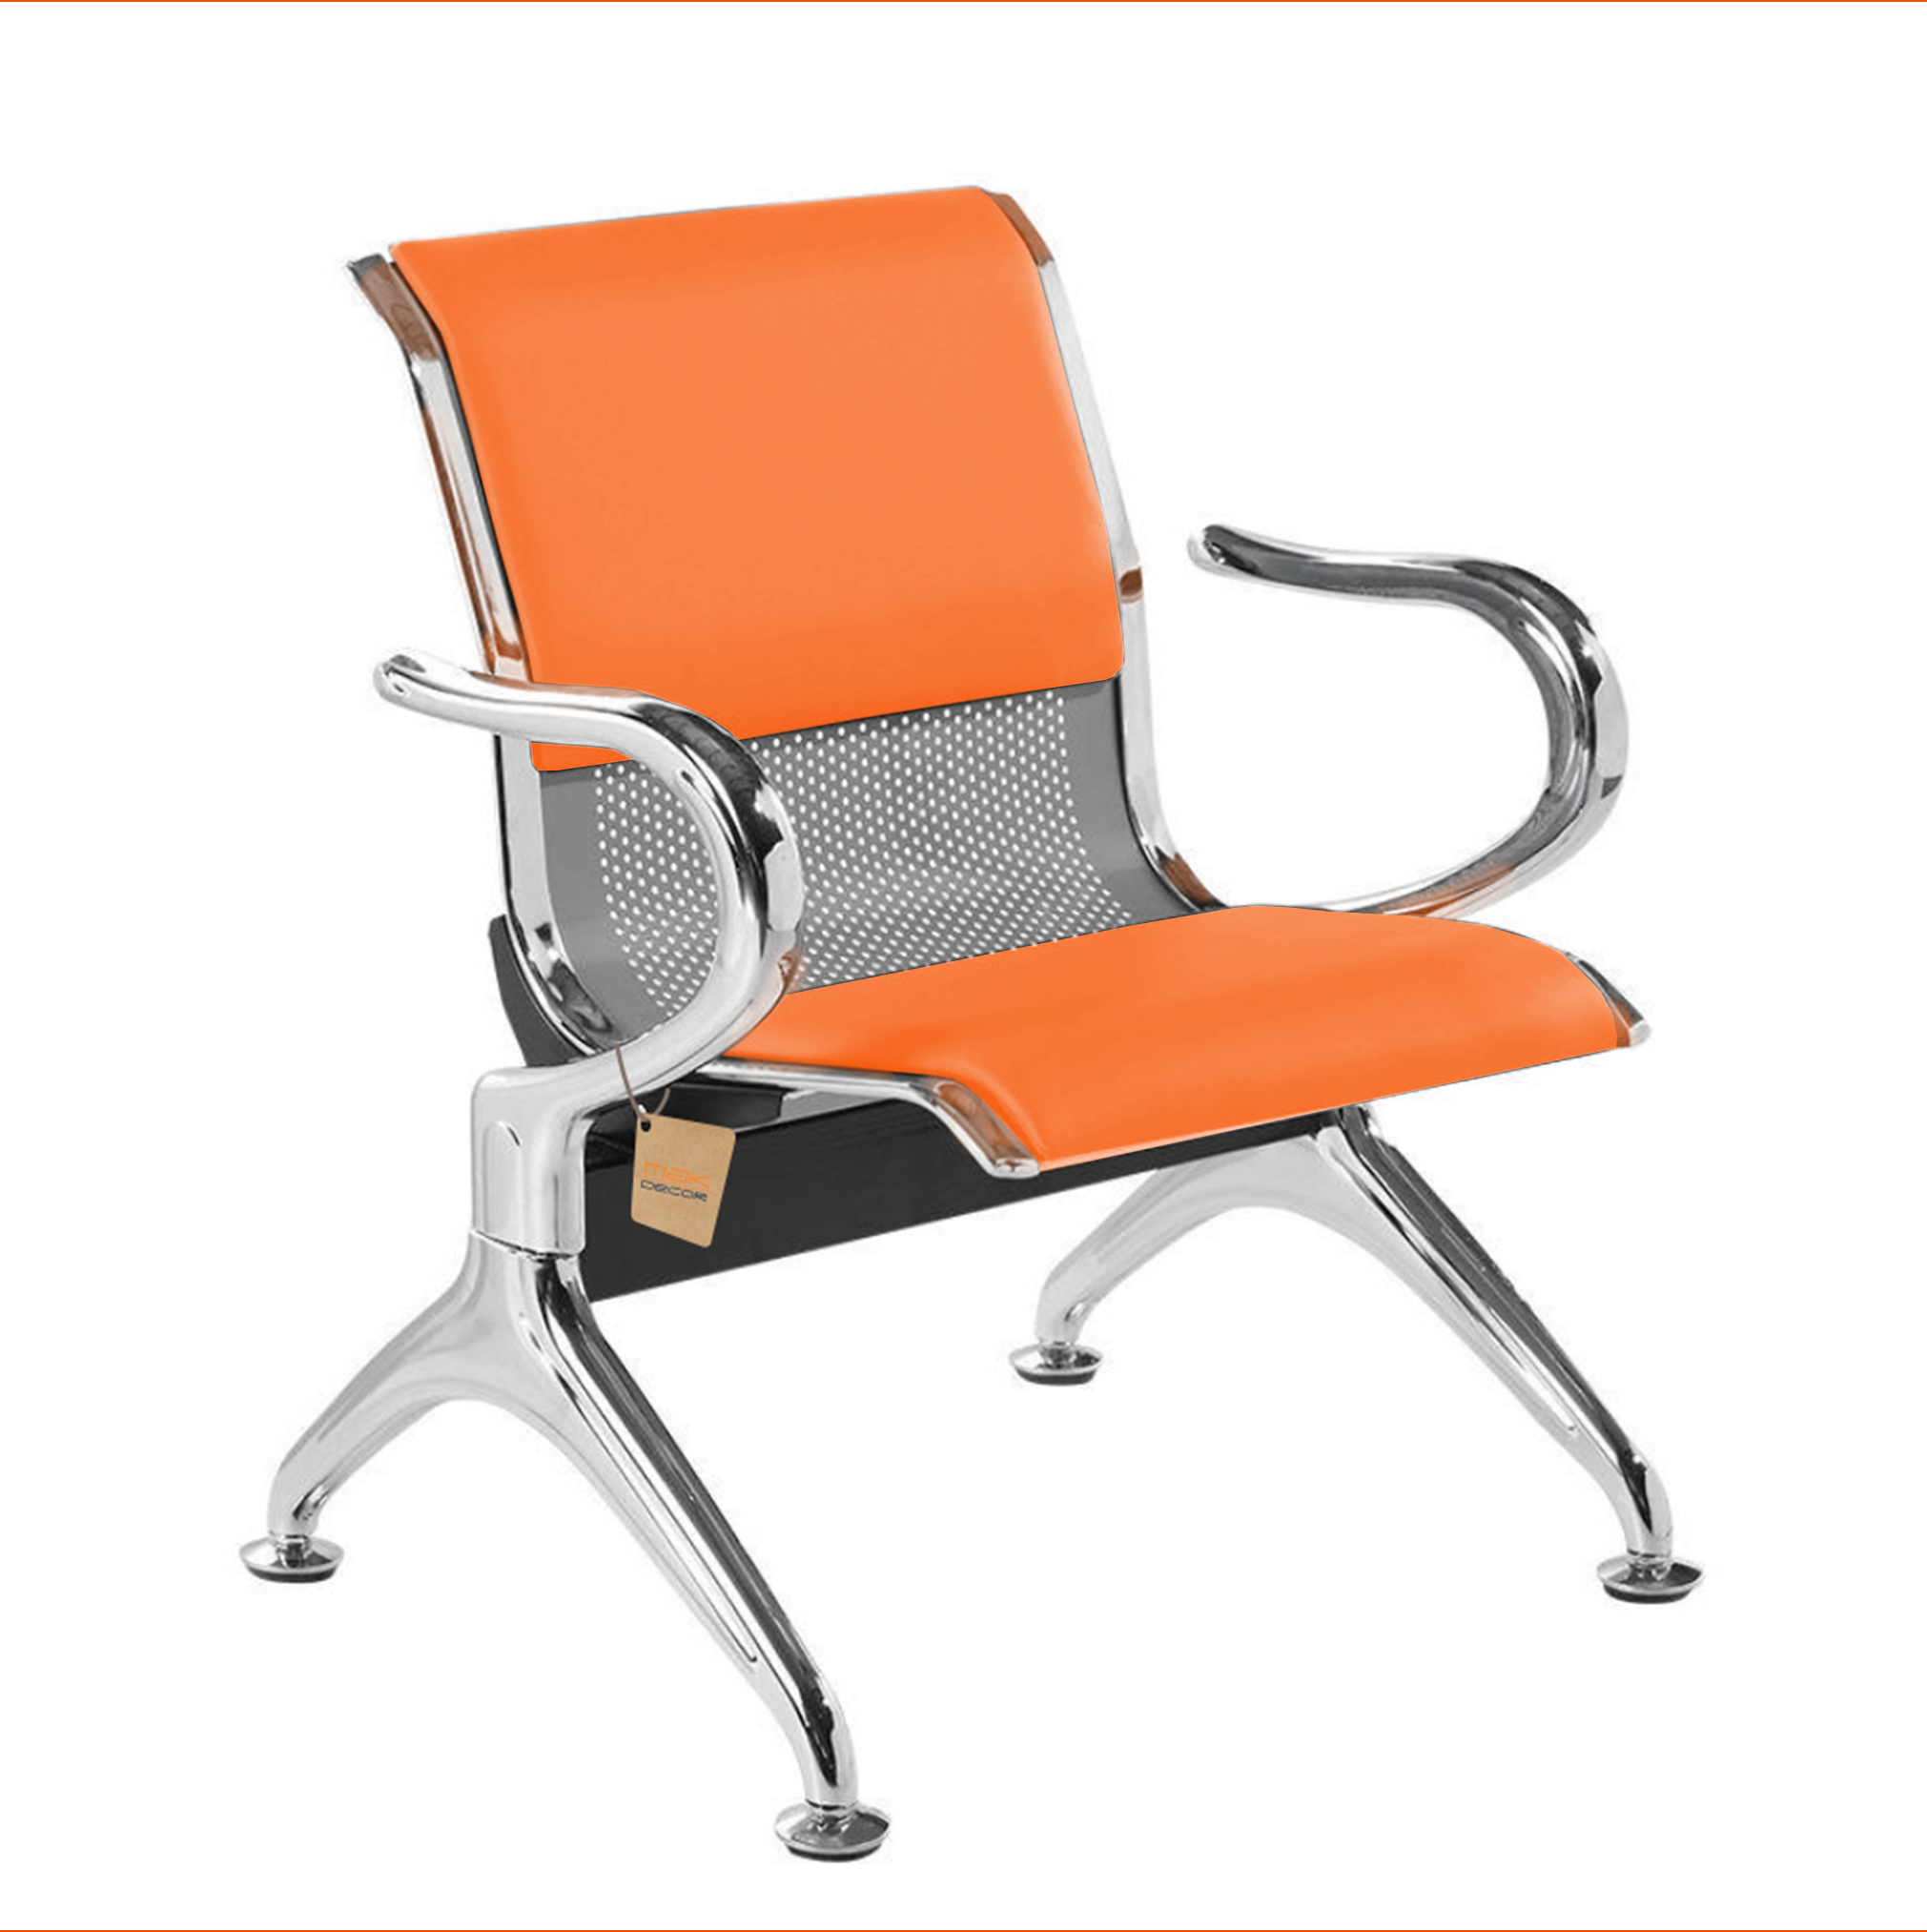 Cadeira Longarina 1 Lugar Com Estofado Colors: Laranja - 1